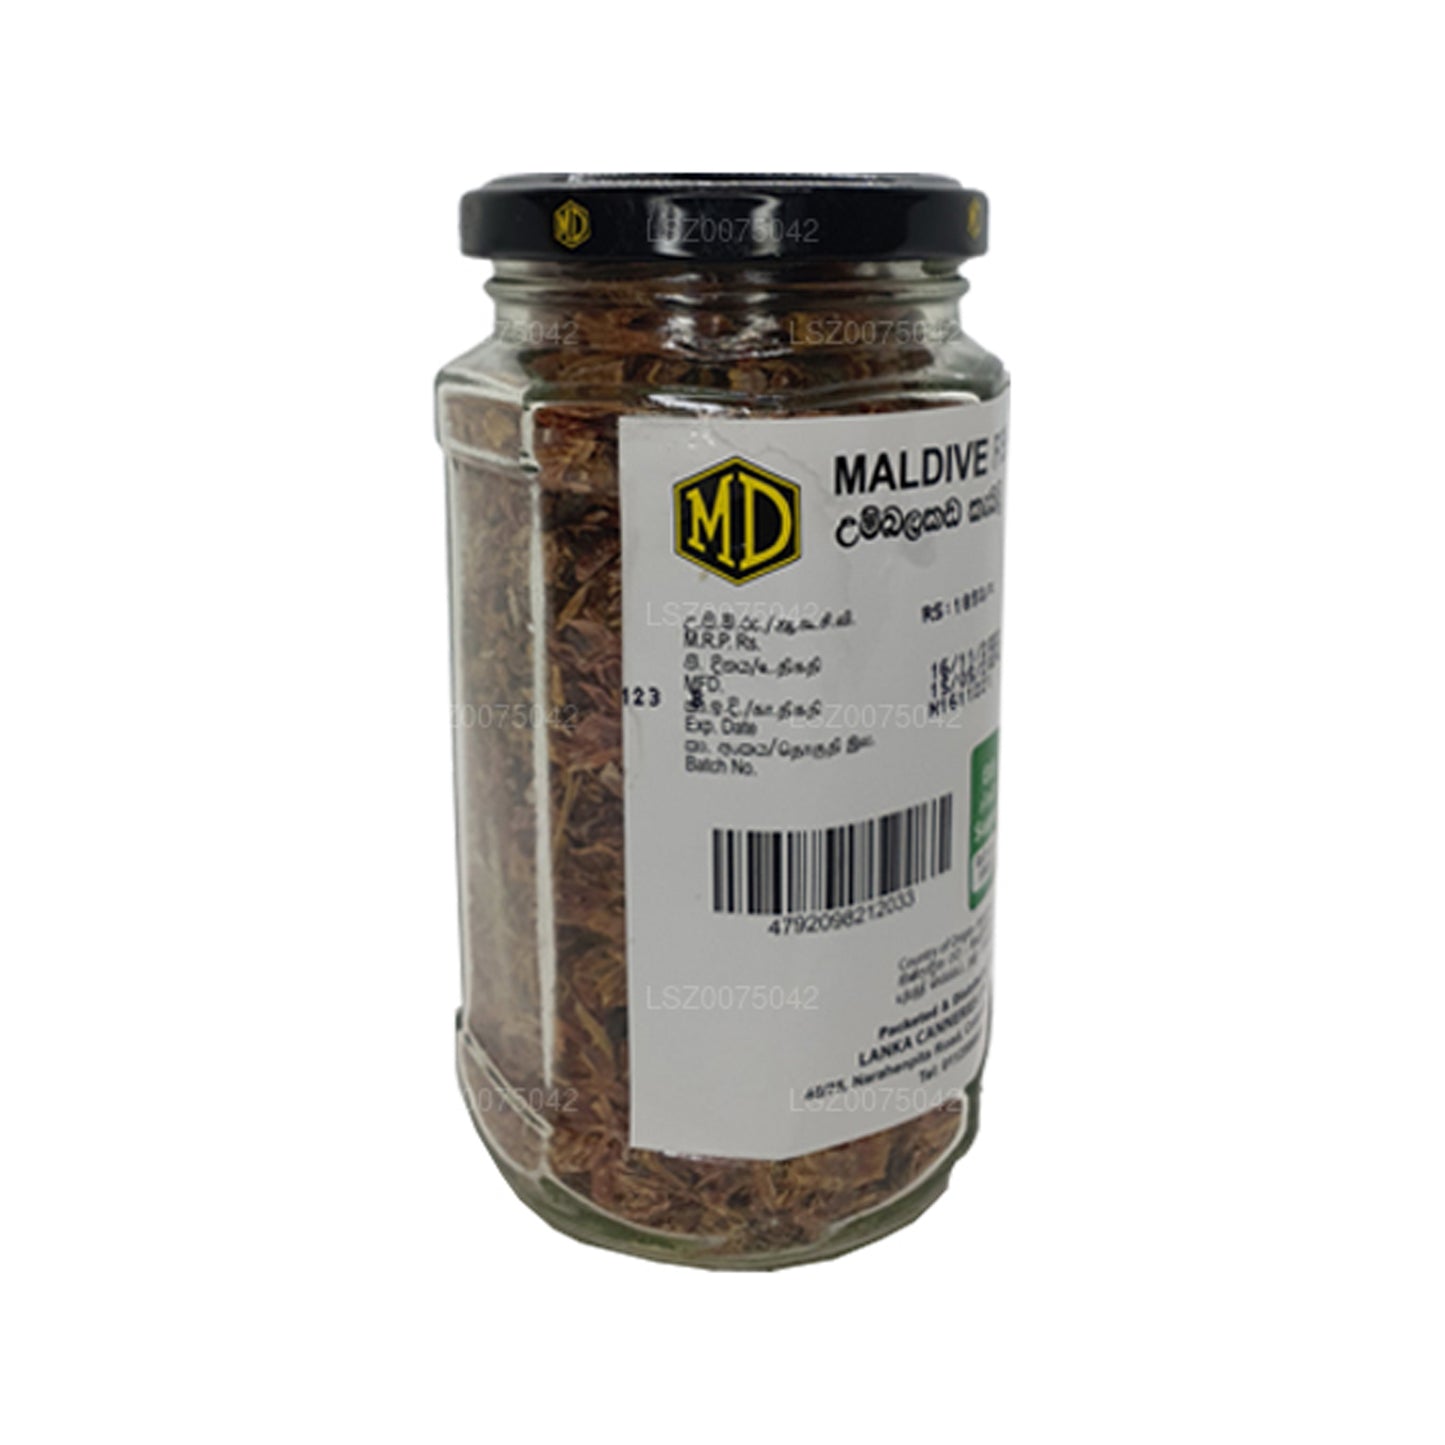 Botella de patatas fritas MD Maldive (200 g)